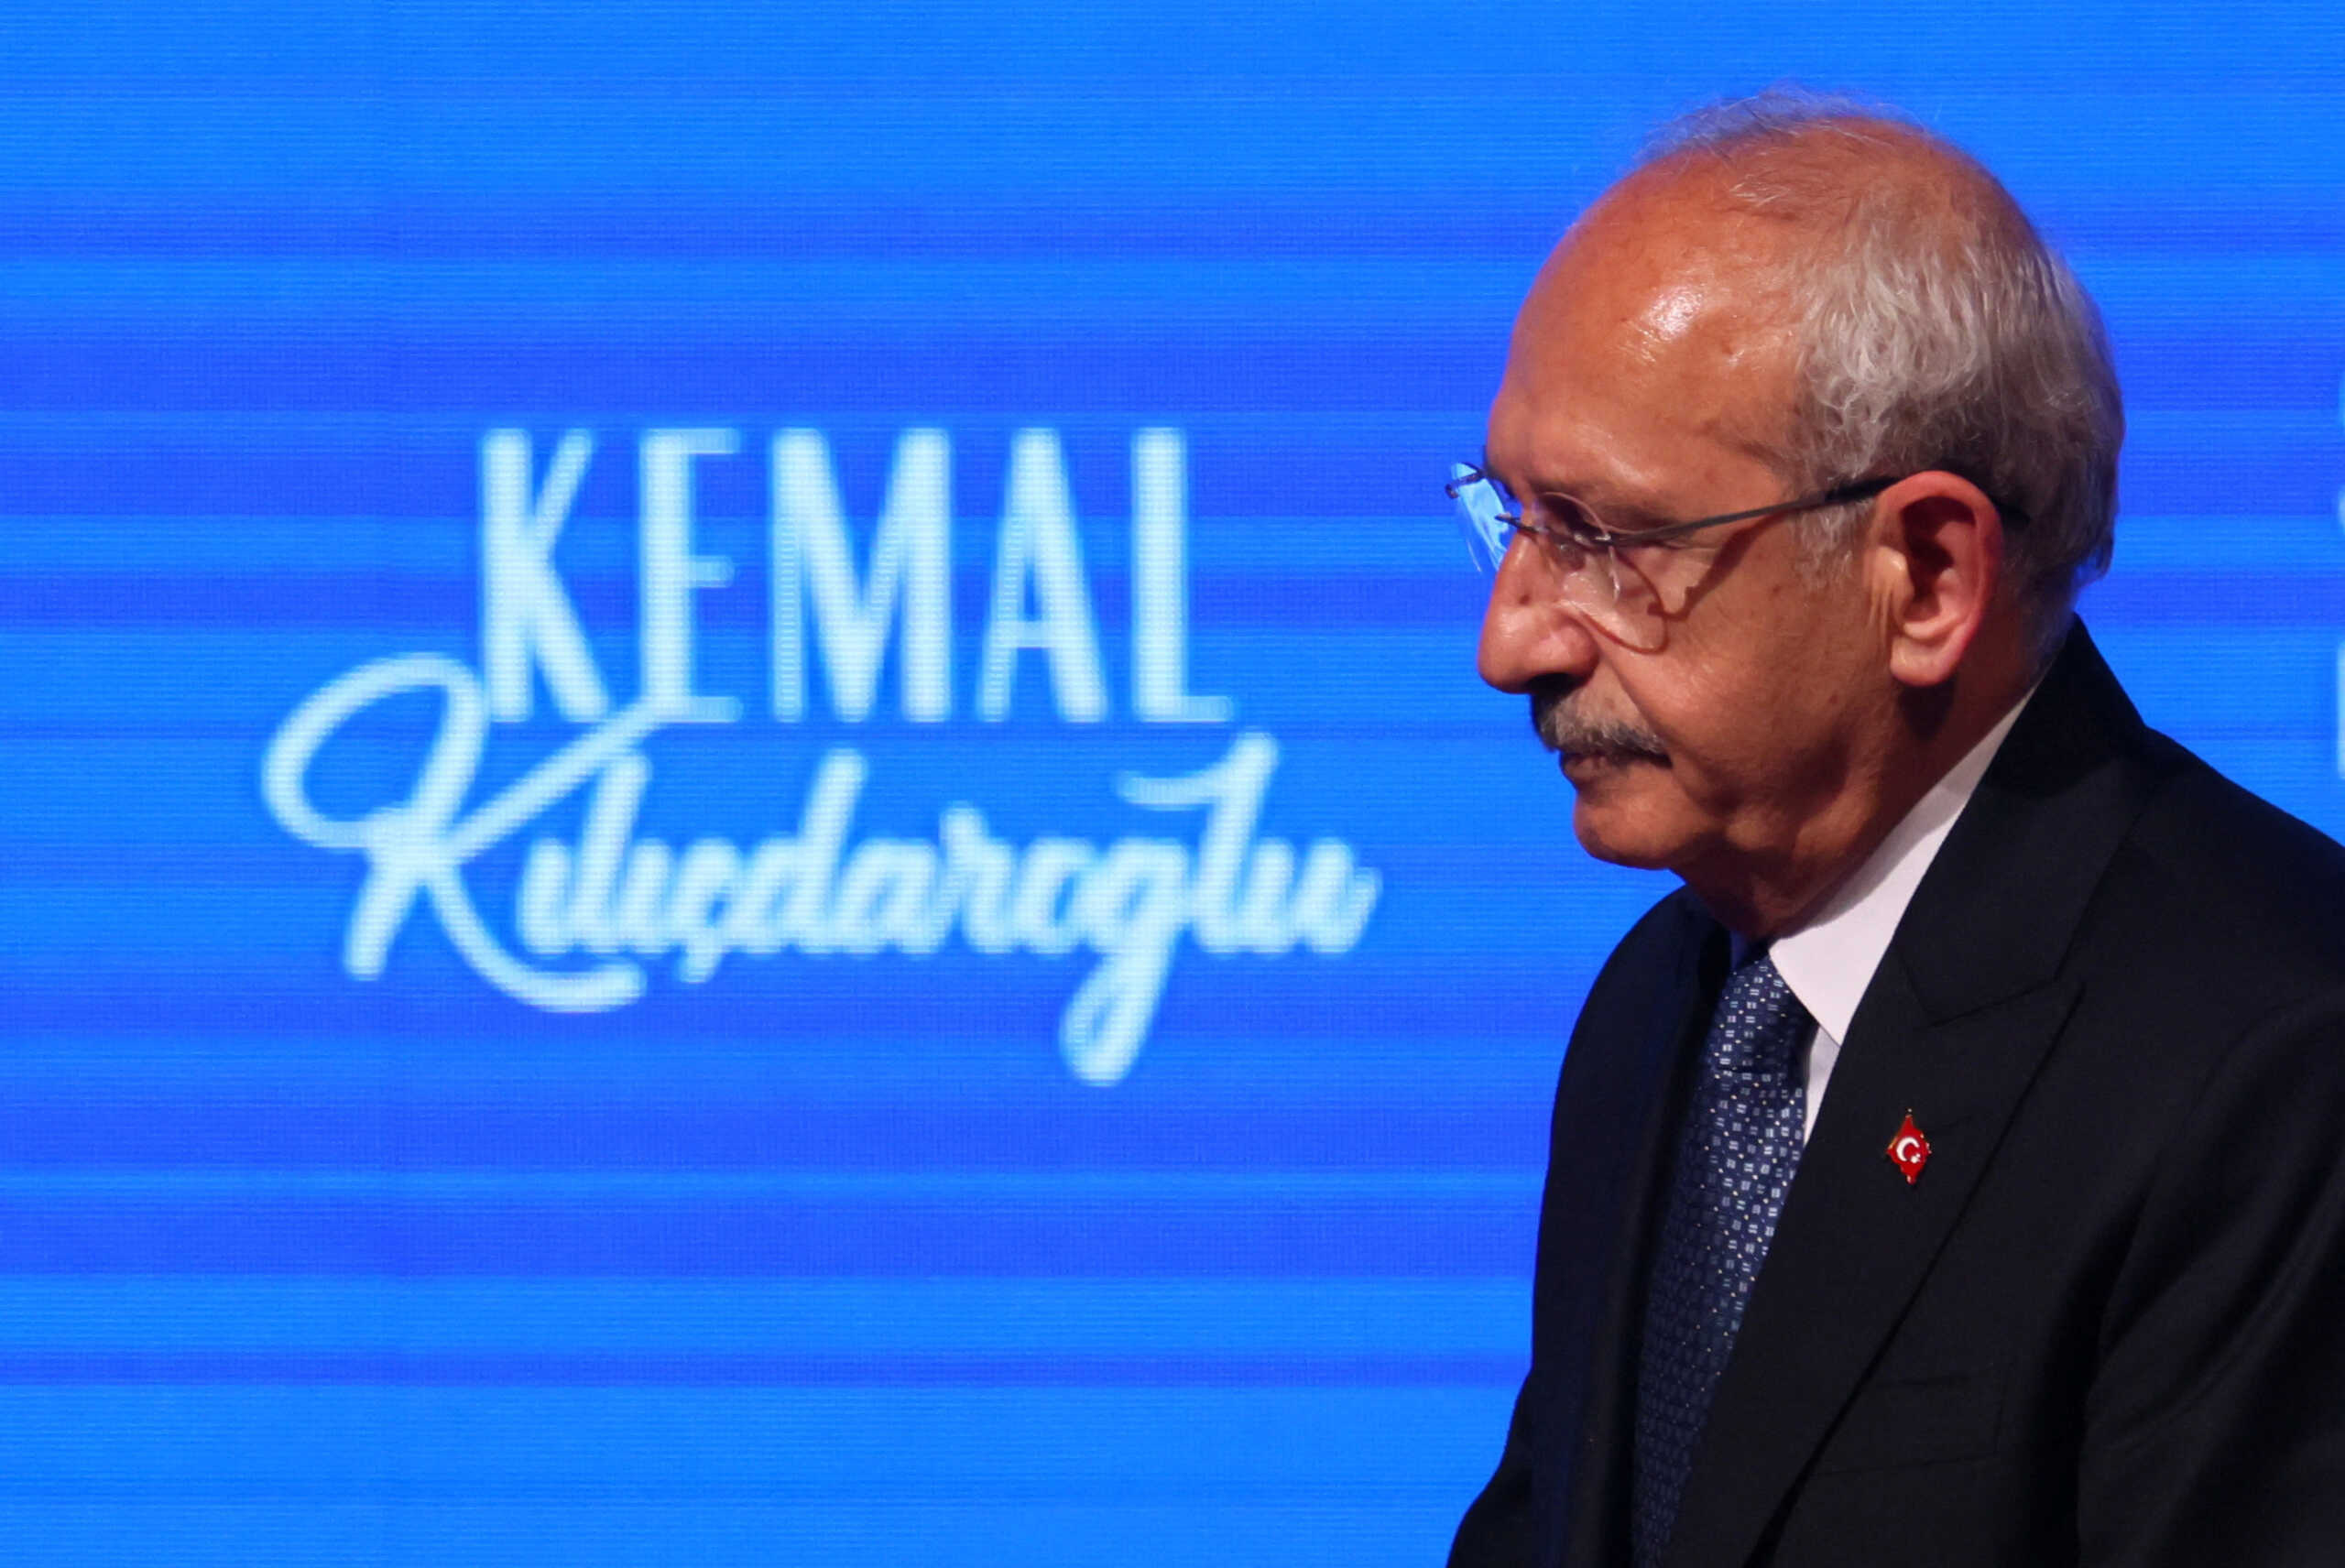 Εκλογές στην Τουρκία: Δεν κατέληξαν σε συμφωνία Κεμάλ Κιλιτσντάρογλου και Σινάν Ογάν ενόψει του δευτέρου γύρου